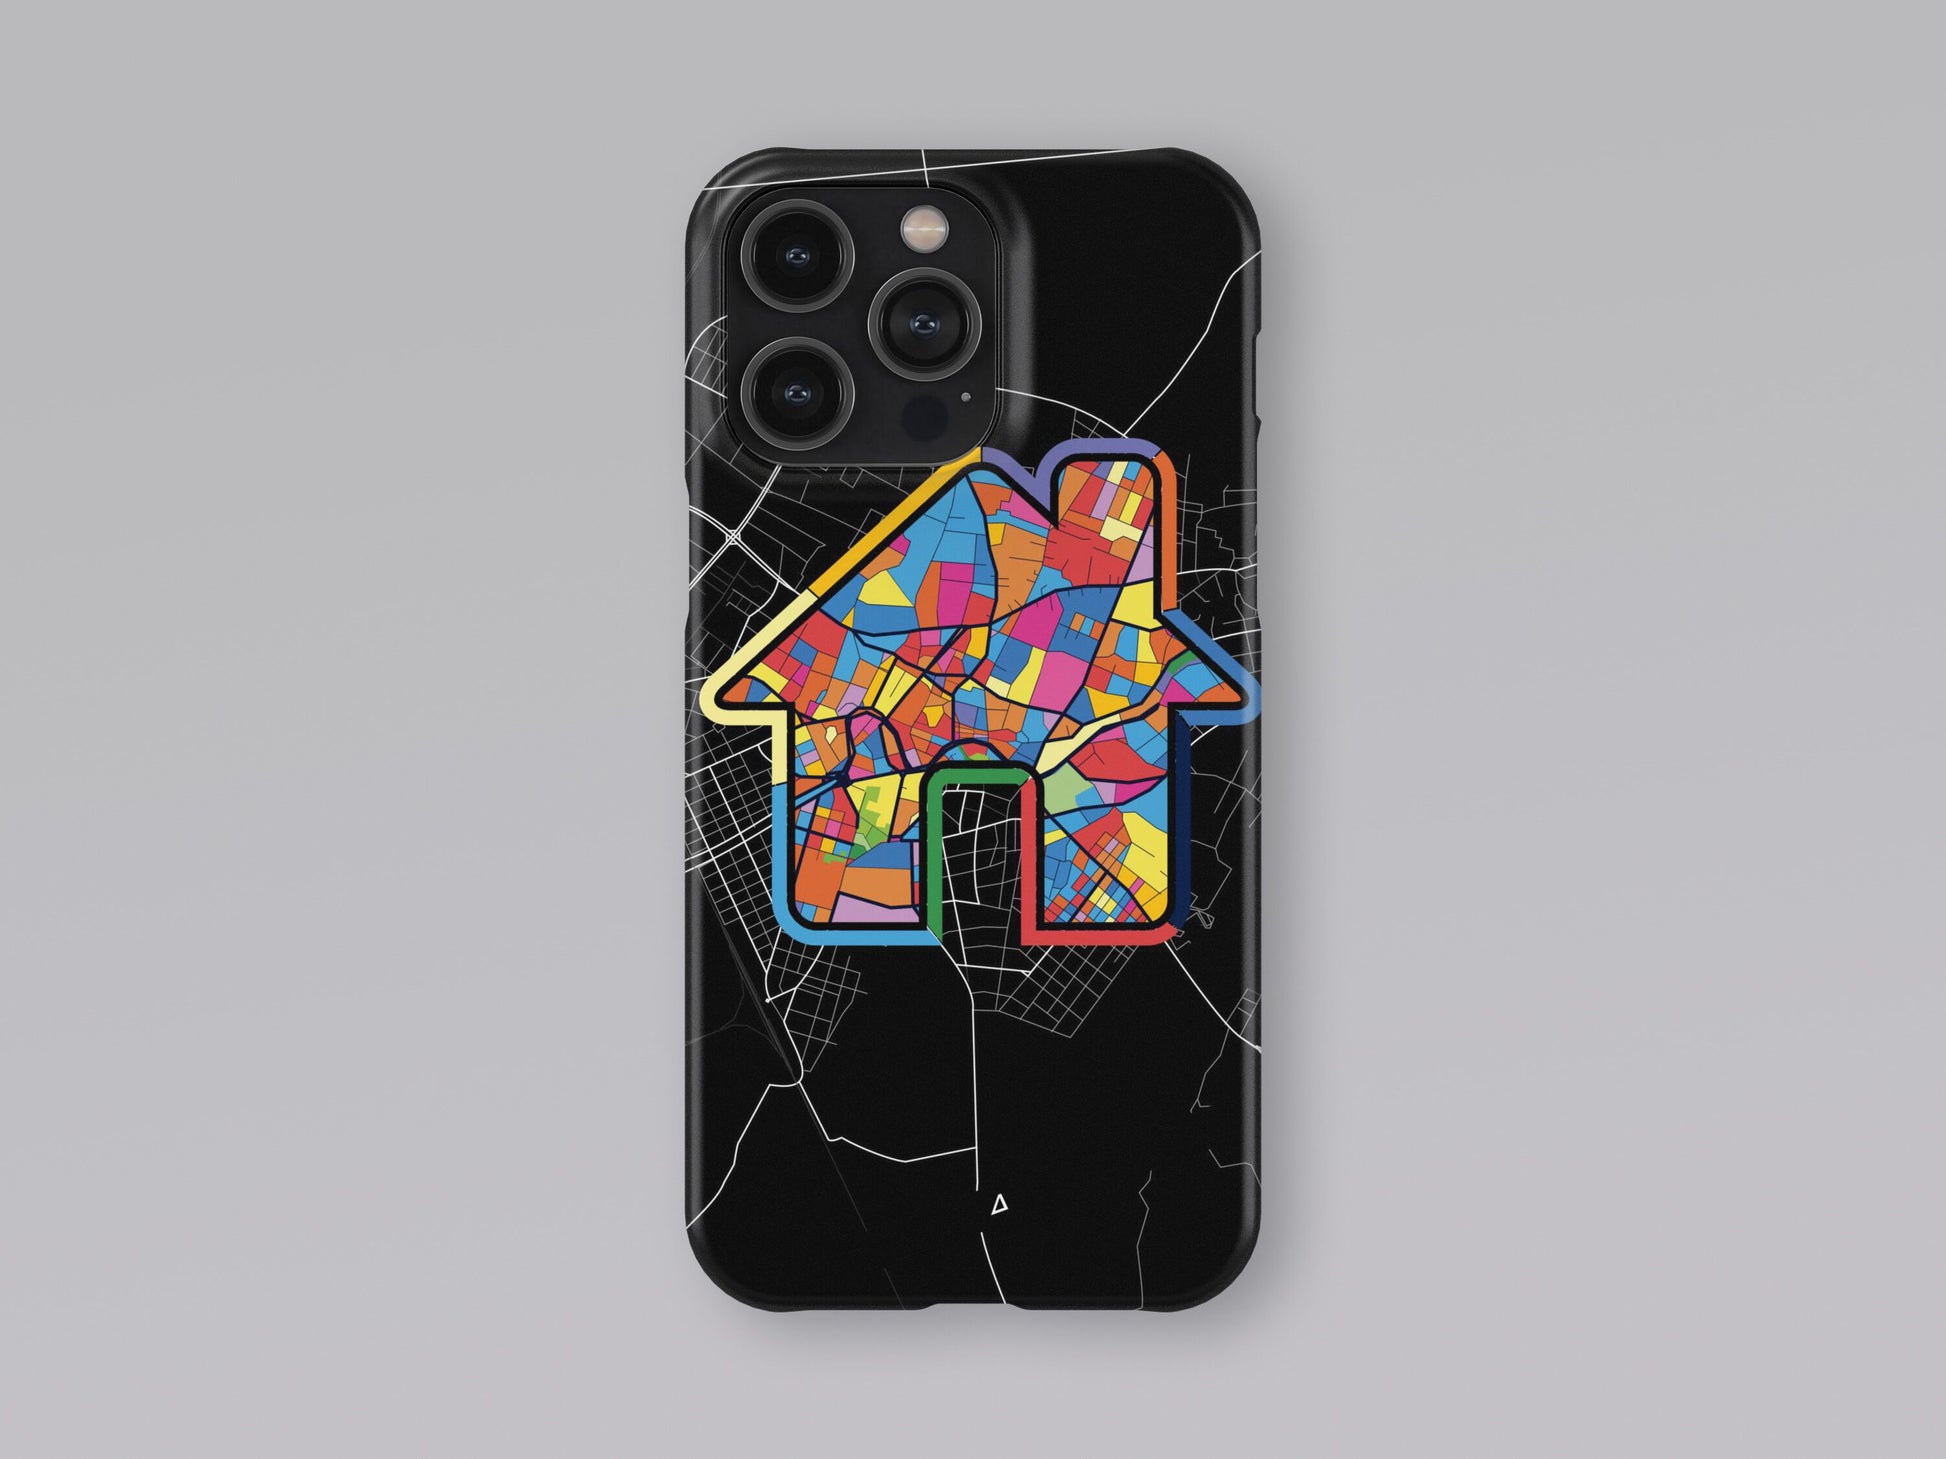 Κομοτηνη Ελλαδα slim phone case with colorful icon 3